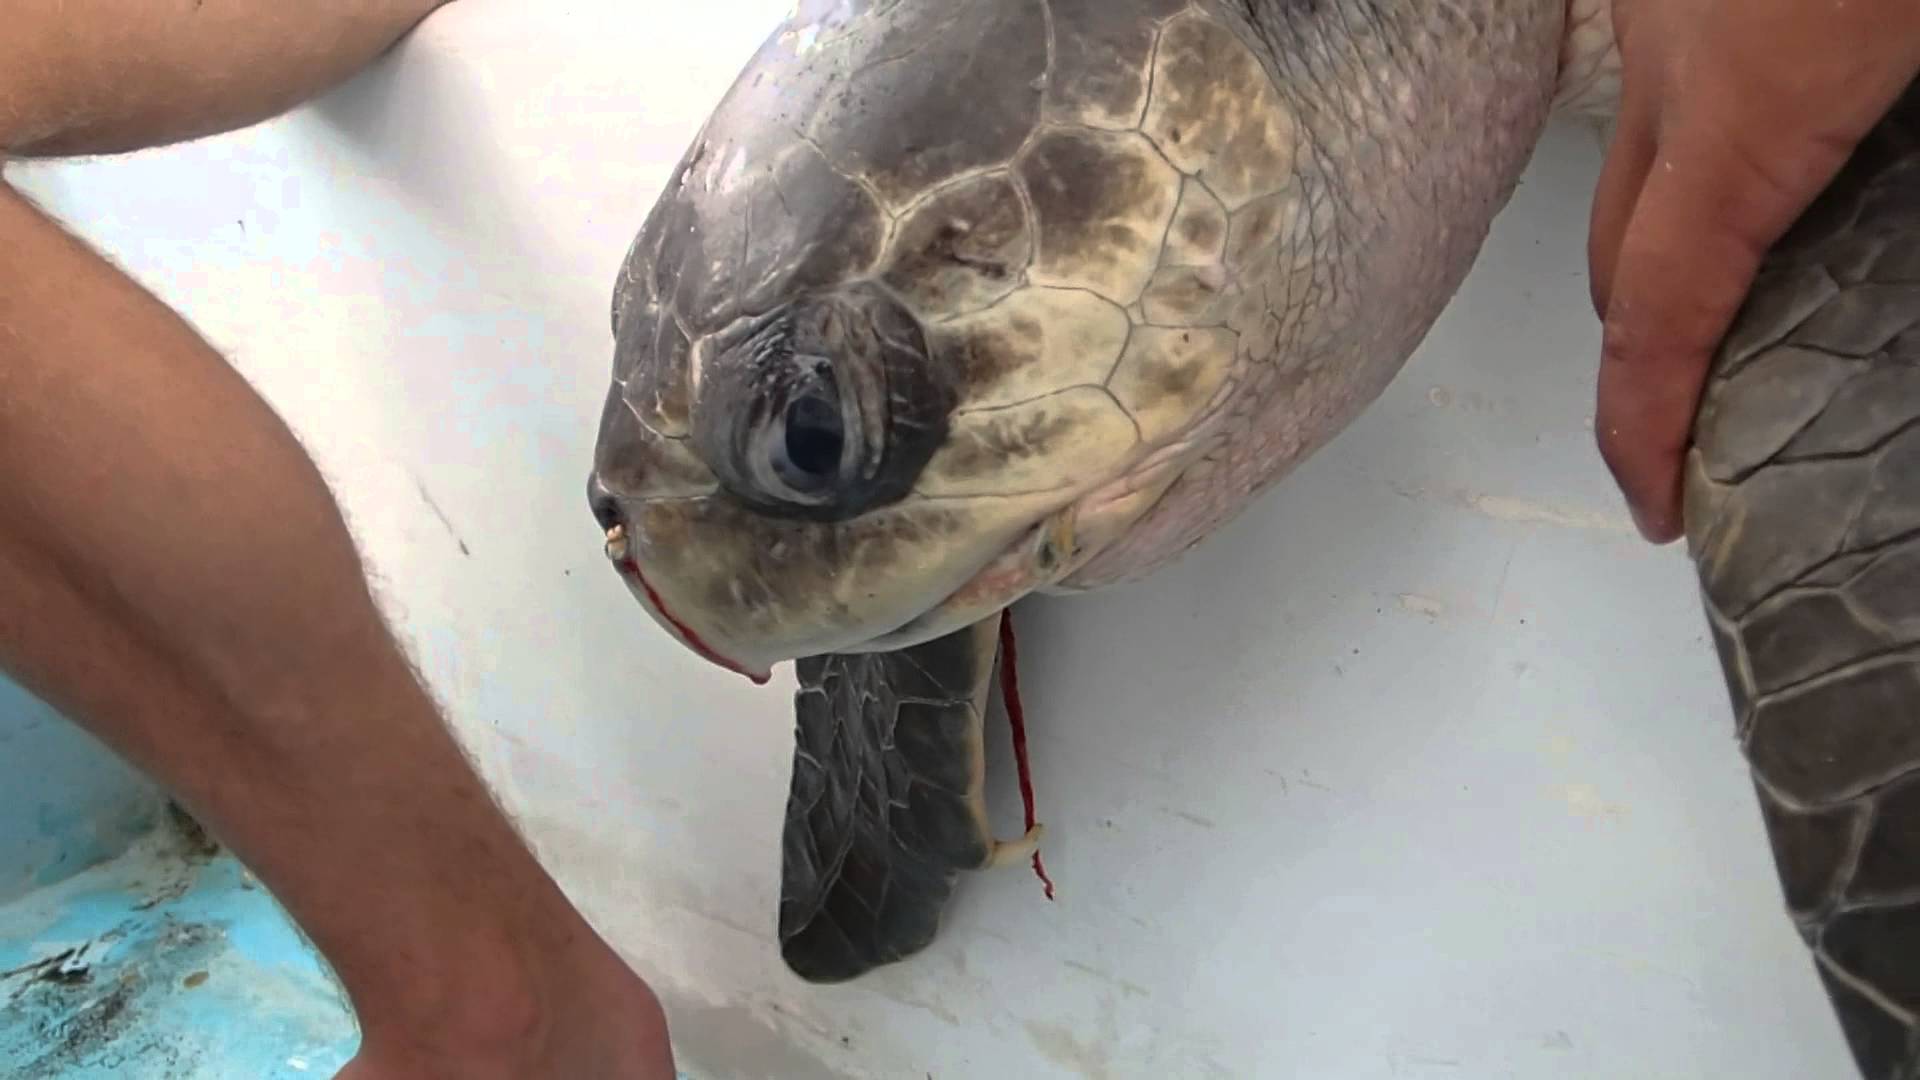 VIDEO: Pretīgi! Bruņurupucim no nāss izvelk sadzīves priekšmetu, kas kā atkritums atradis savu ceļu uz okeānu. Brīdinām – daži skati var būt nepatīkami jūtīgiem skatītājiem!  (Sea Turtle with Straw up its Nostril – “NO” TO PLASTIC STRAWS)